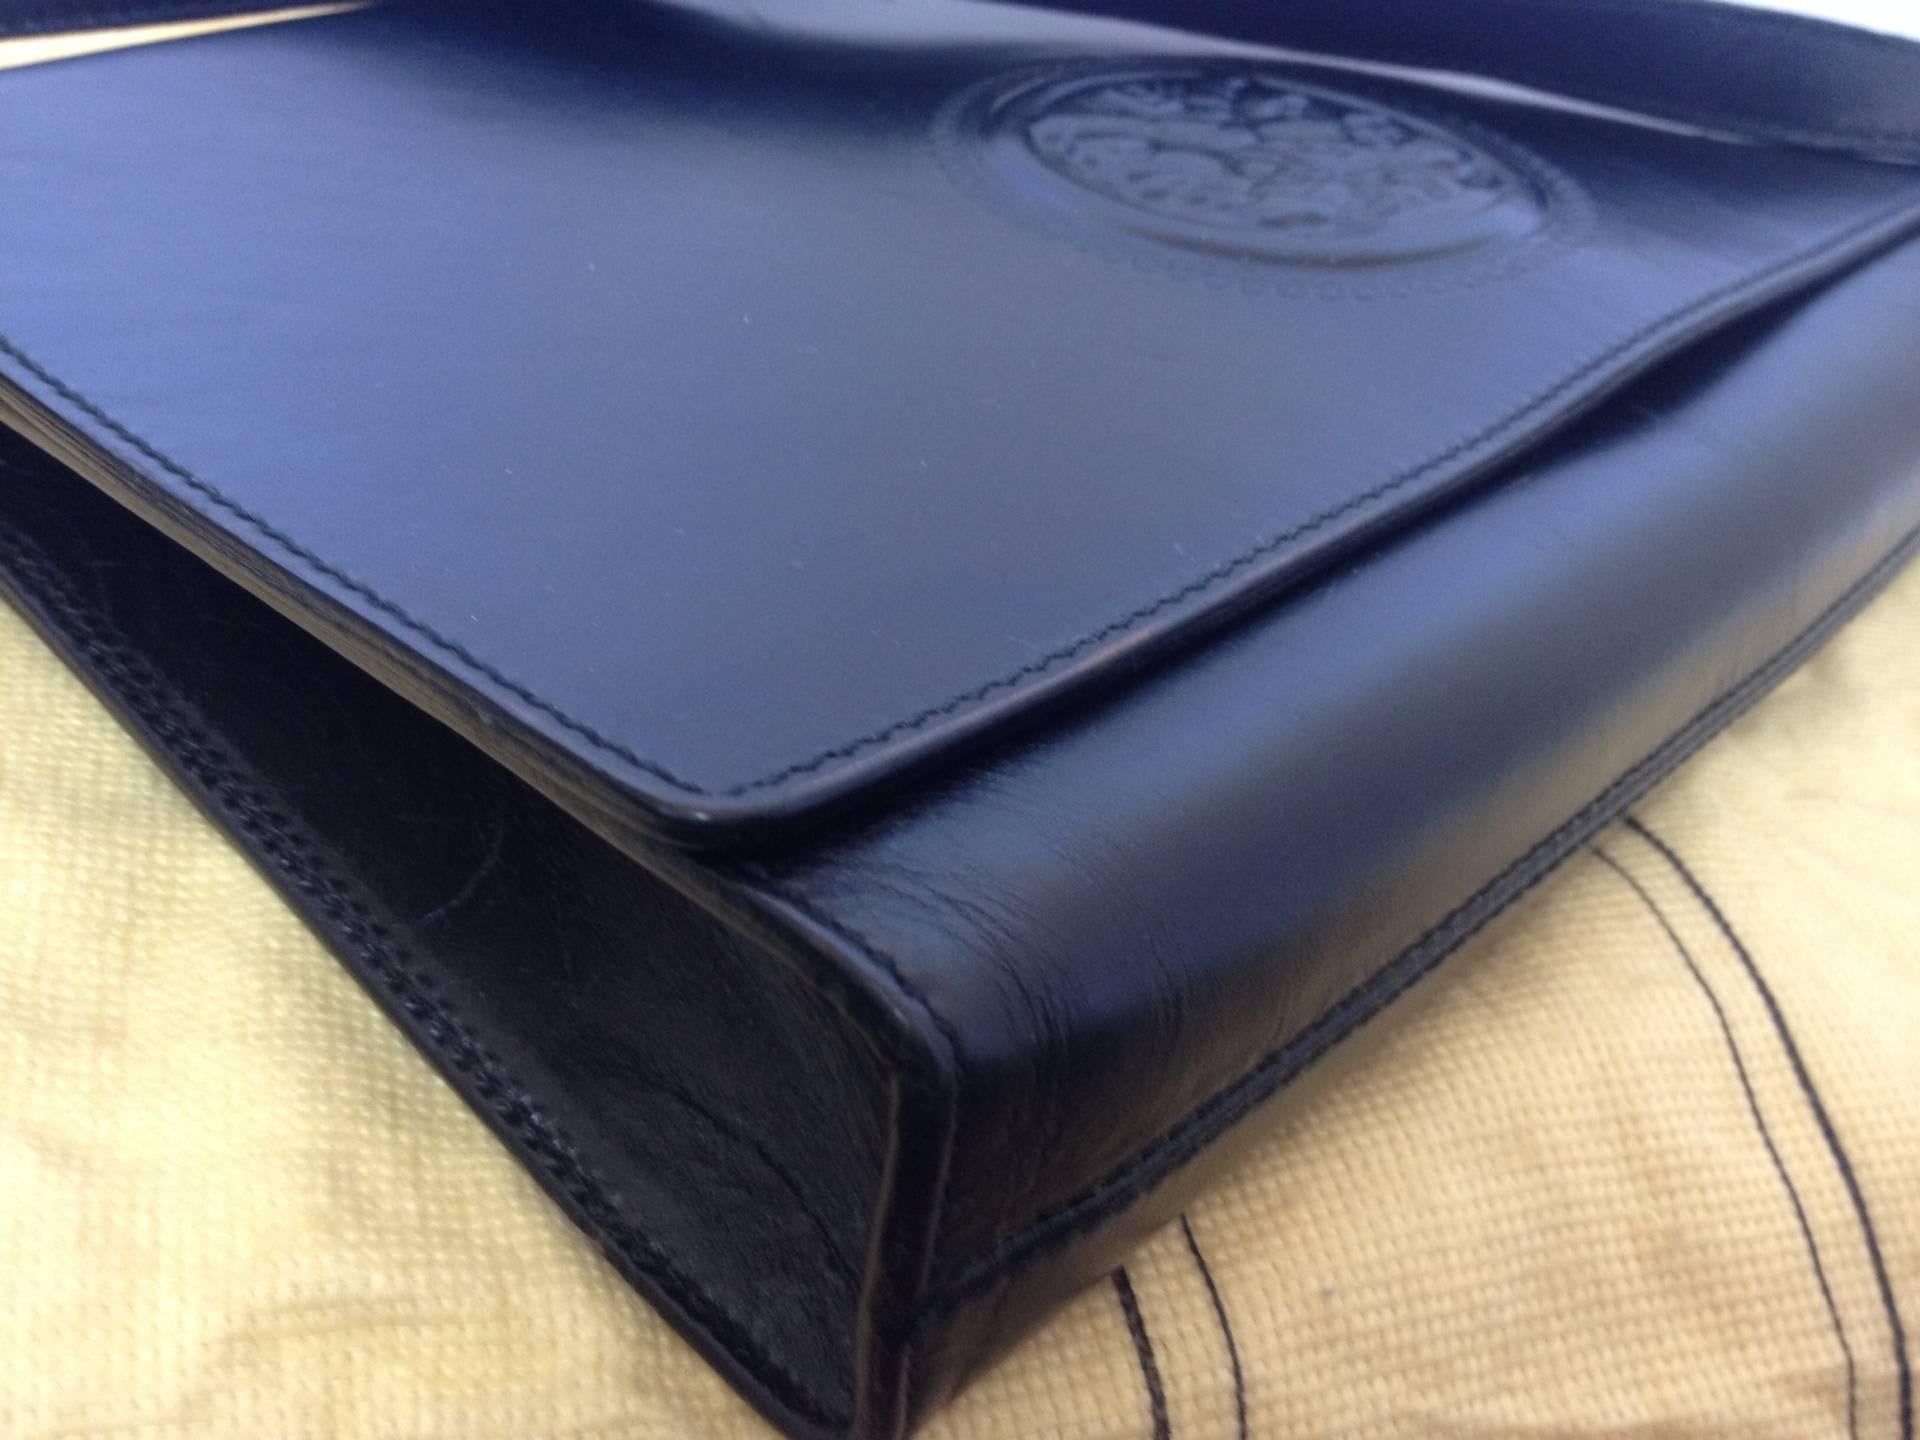 Vintage FENDI black leather shoulder bag, large clutch purse with iconic logo  4